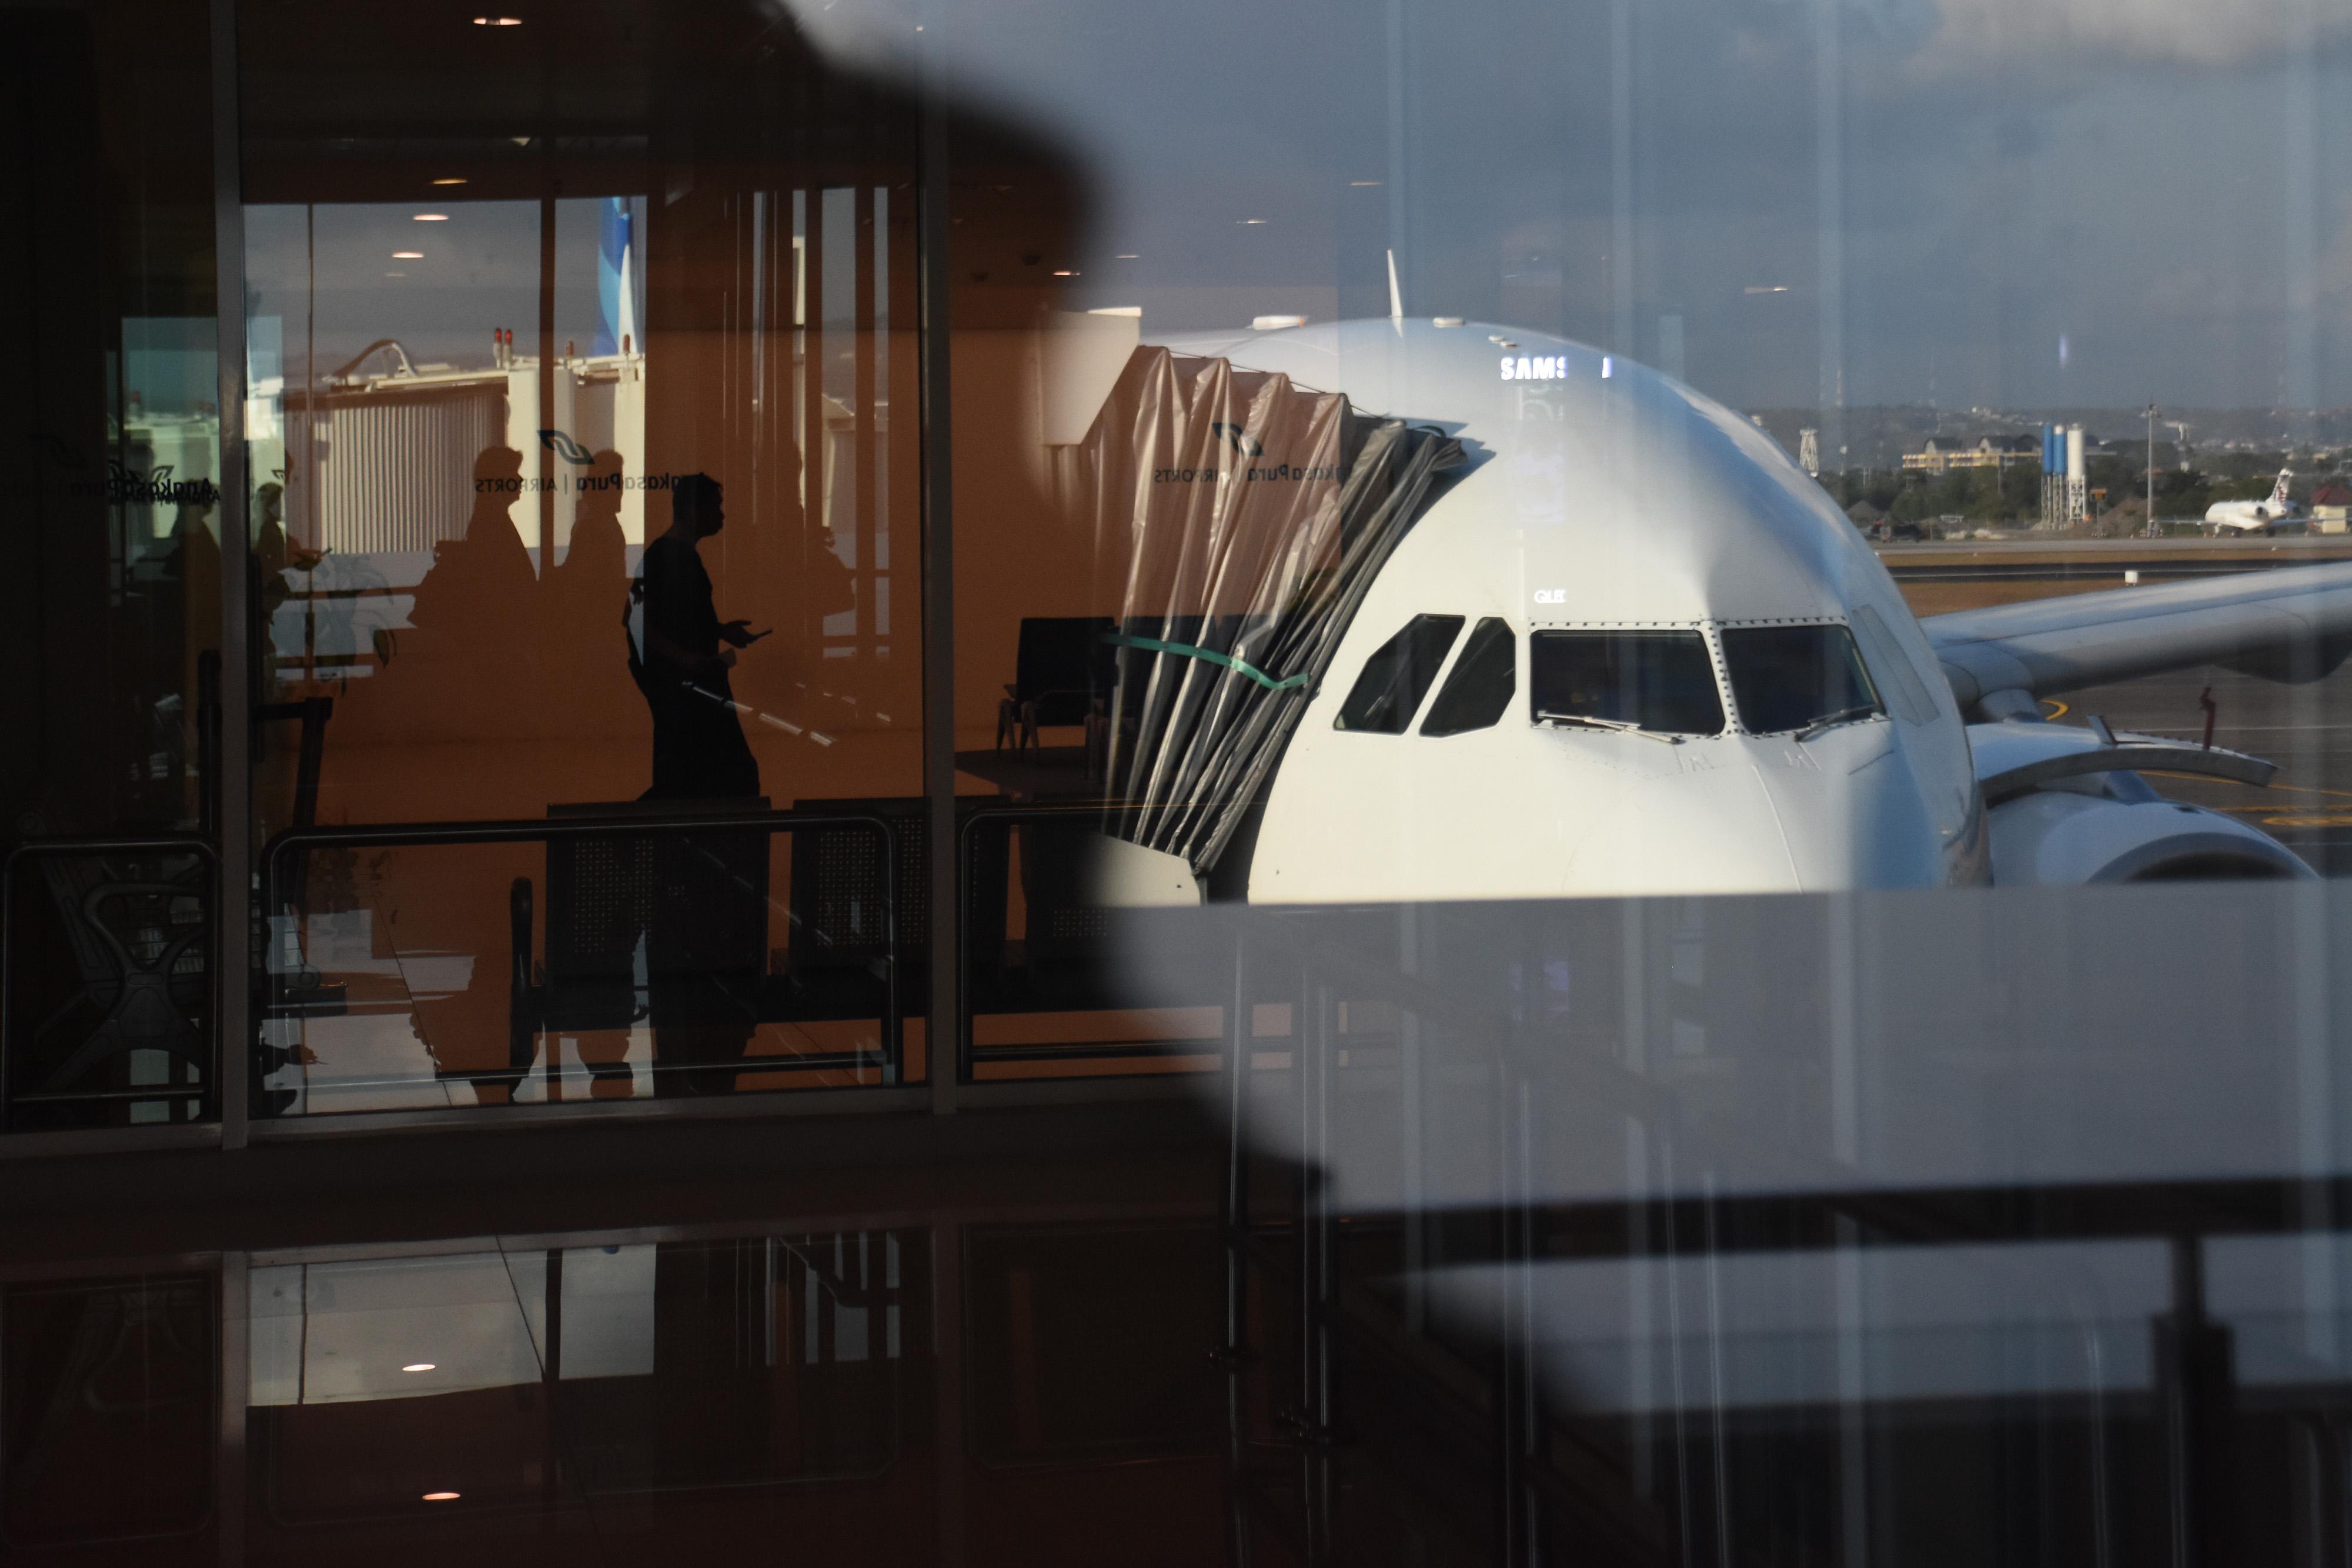 Berita Hari Ini: Ramai Rilis Obligasi Korporasi, Tiket Pesawat Turun di Jam Sepi